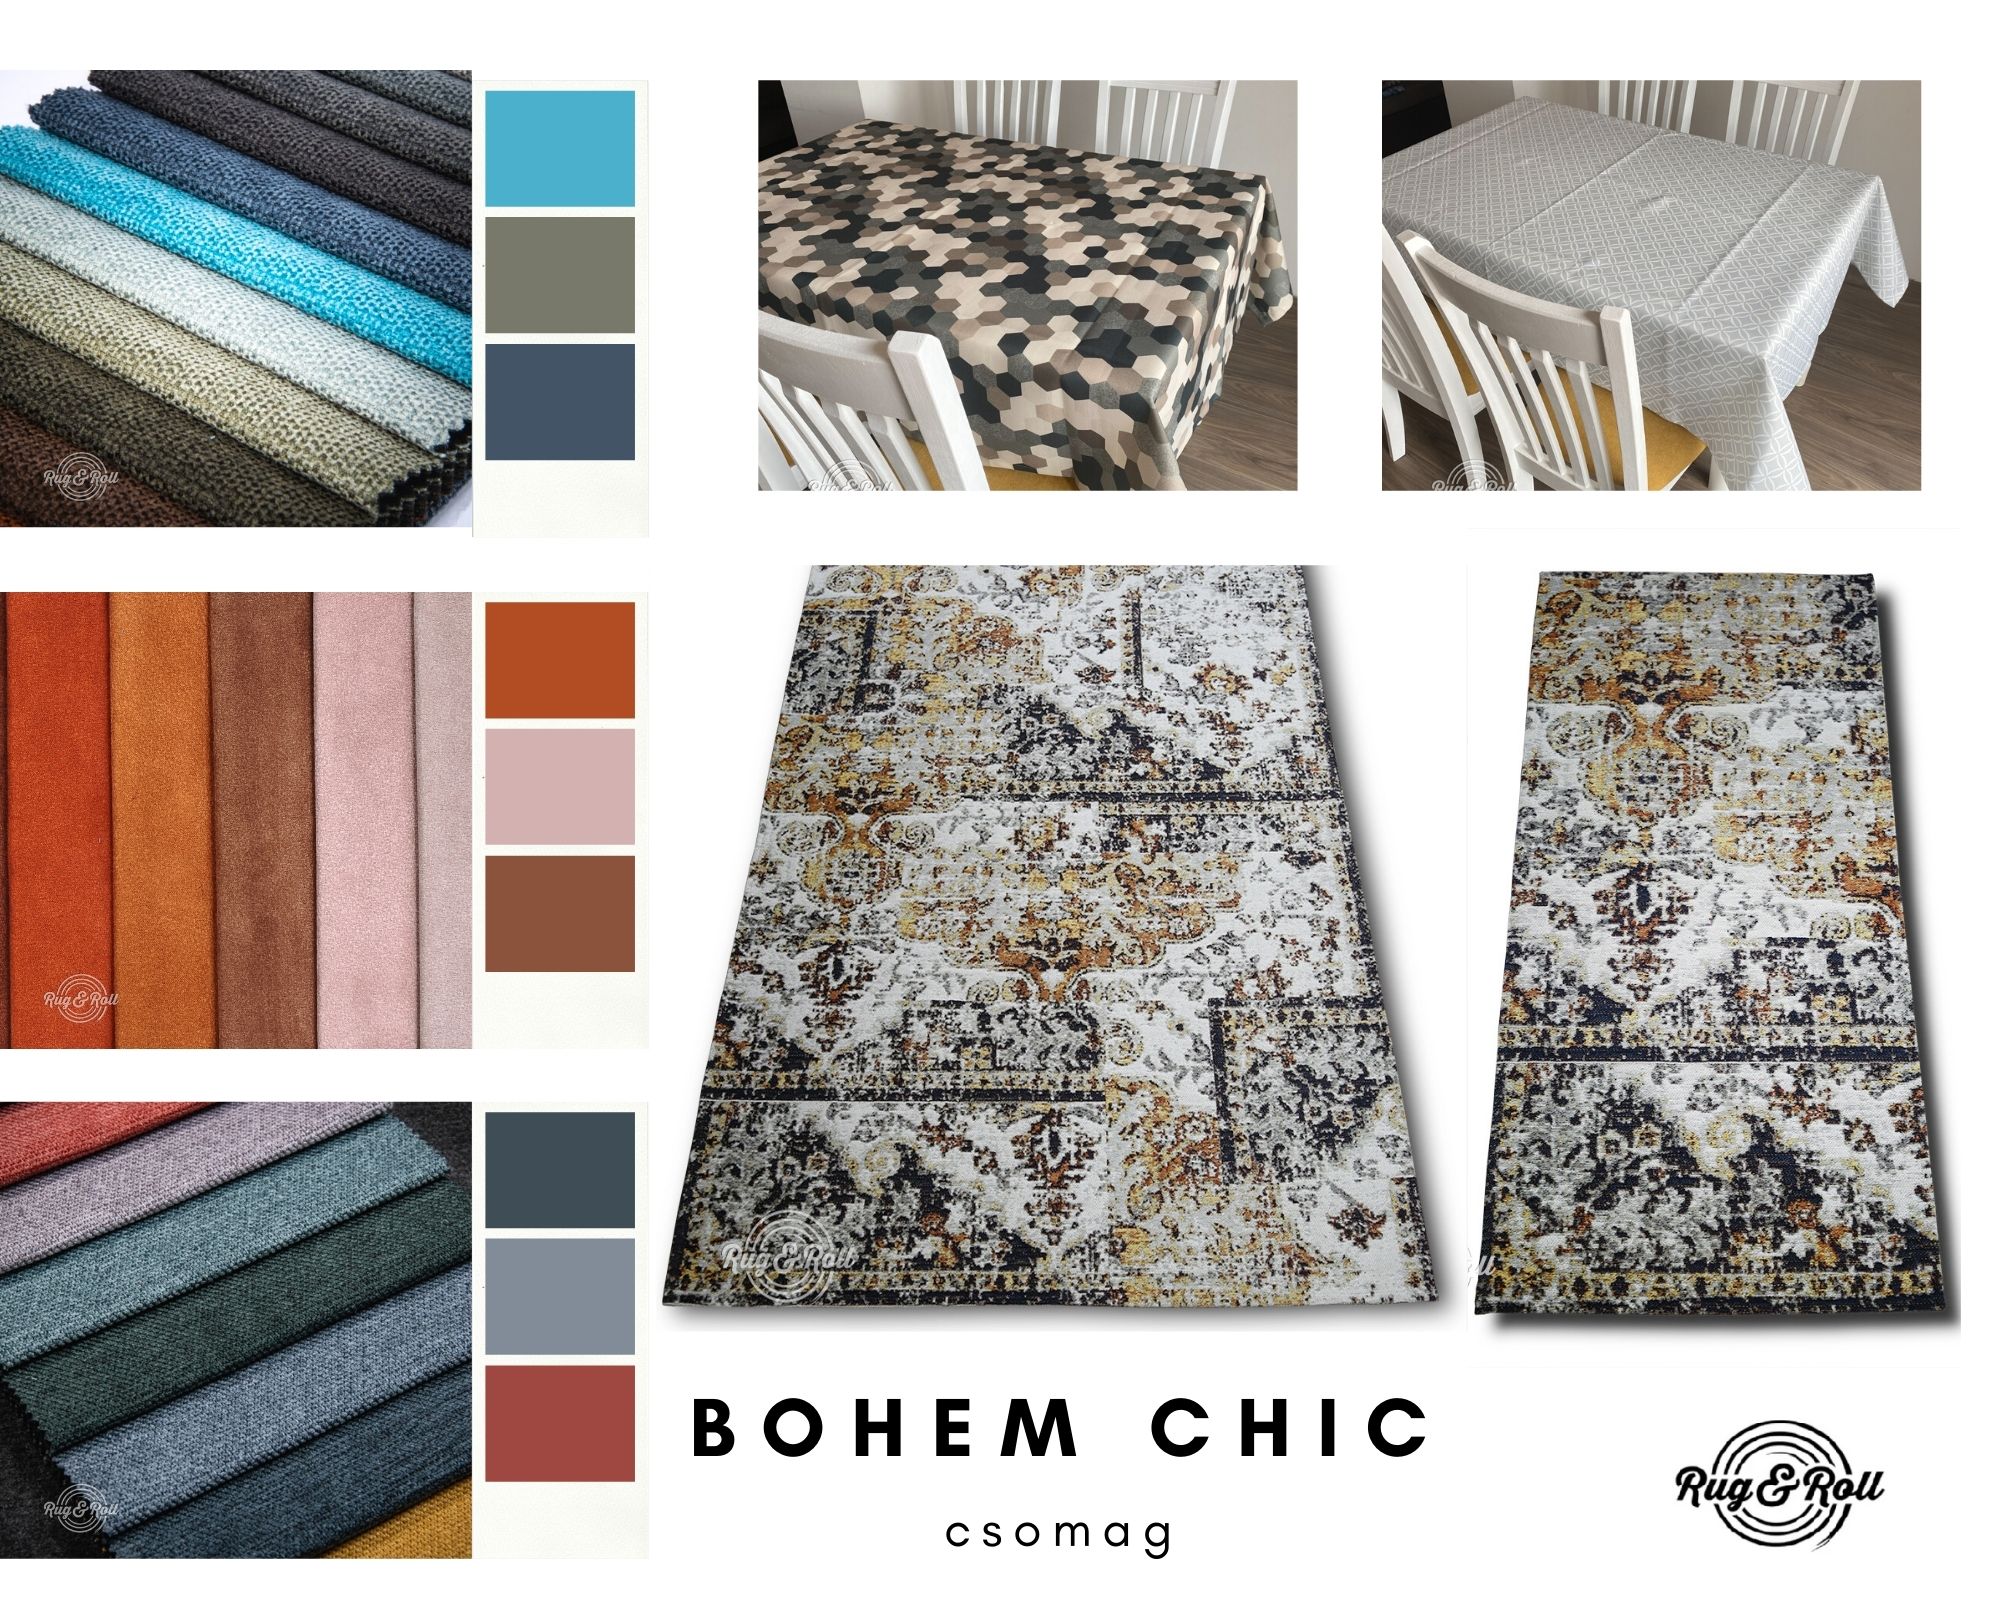 Bohem Chic stílusú szőnyegek és bútorszövetek